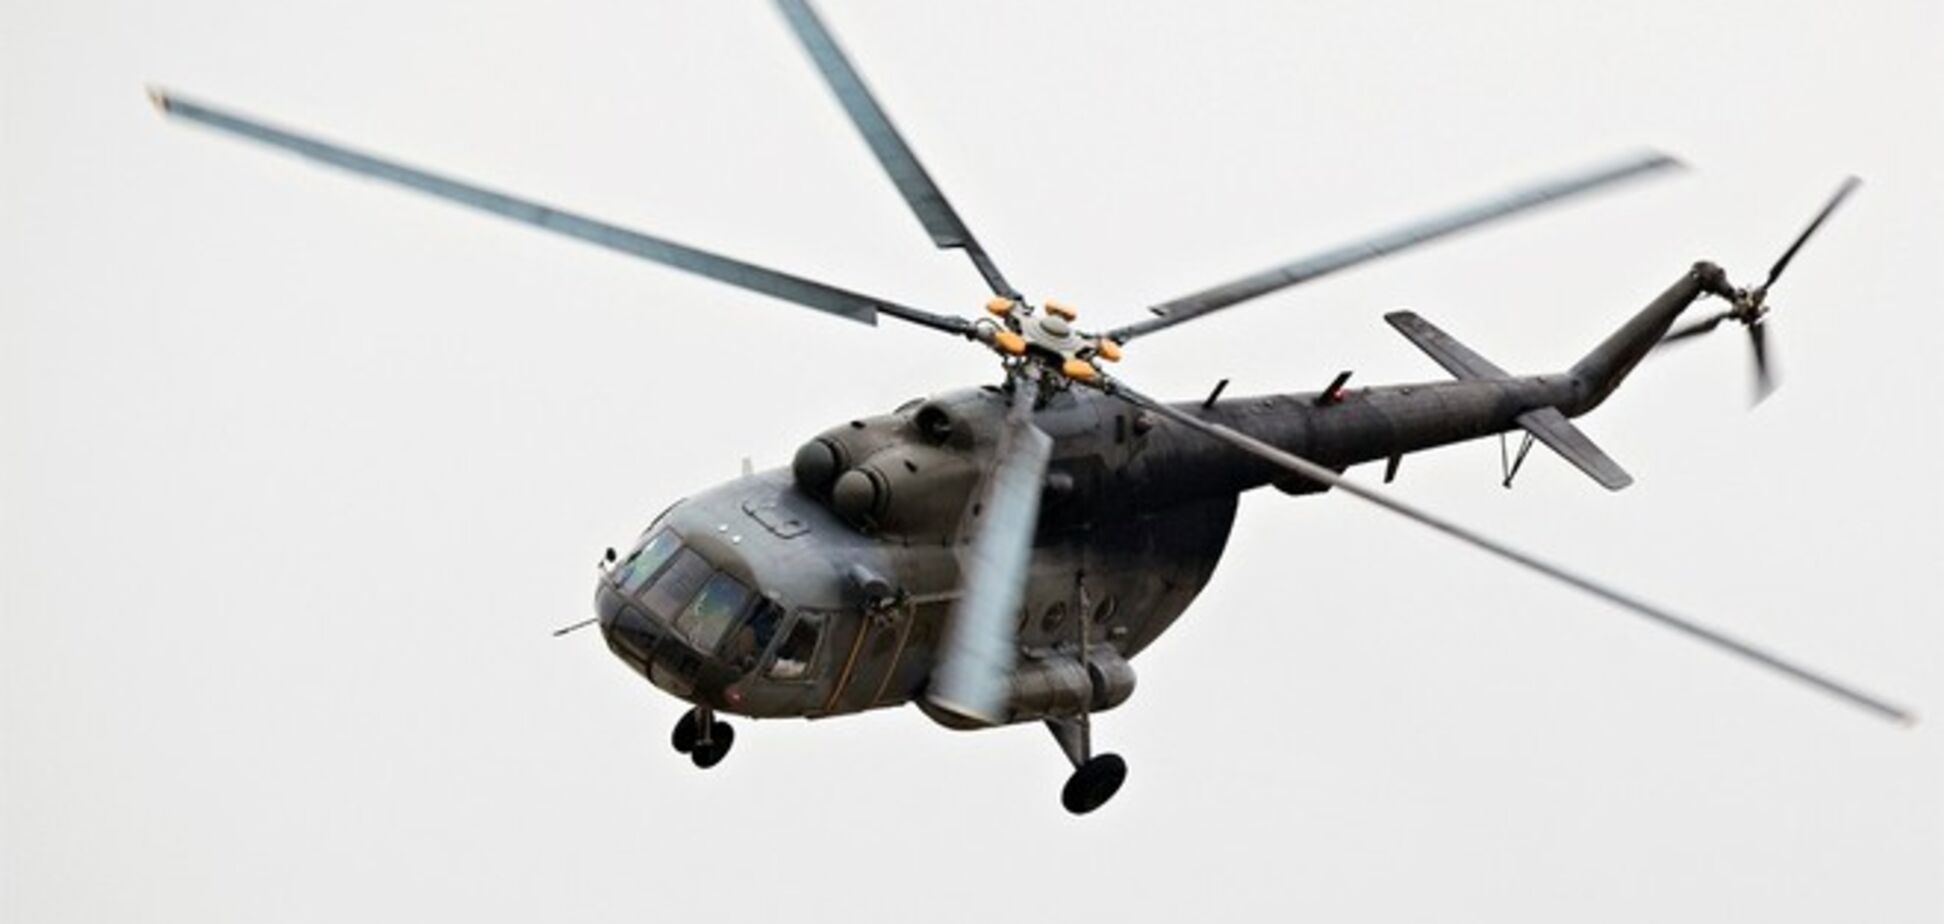 Азербайджан сбил армянский боевой вертолет. Идет перестрелка из автоматов